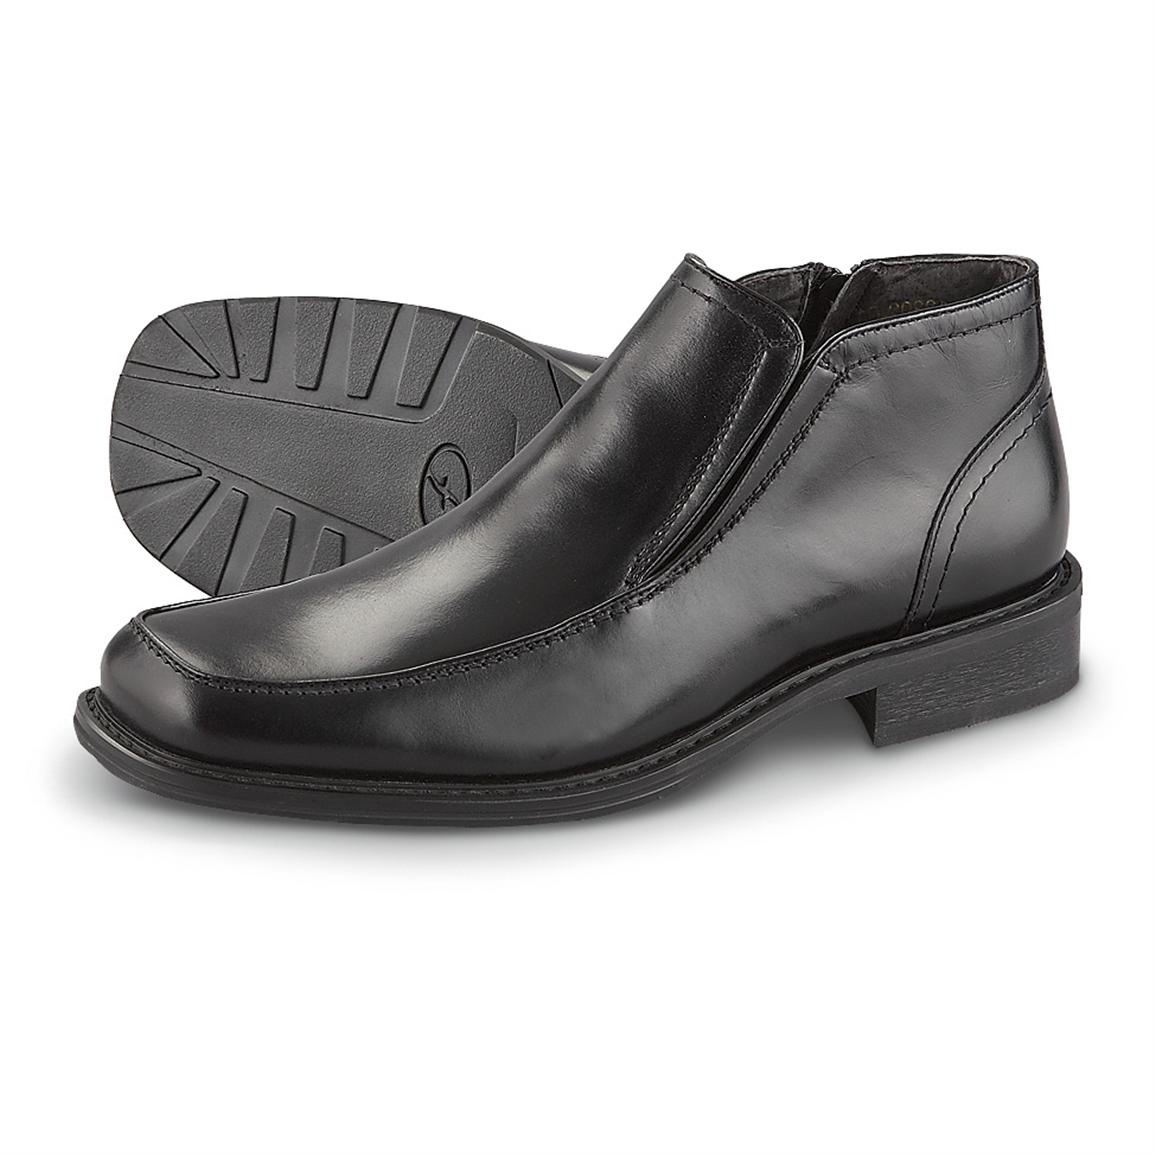 Men's FlorsheimÂ® Carson Dress Boots, Black - 158896, Dress Shoes at Sportsman's Guide